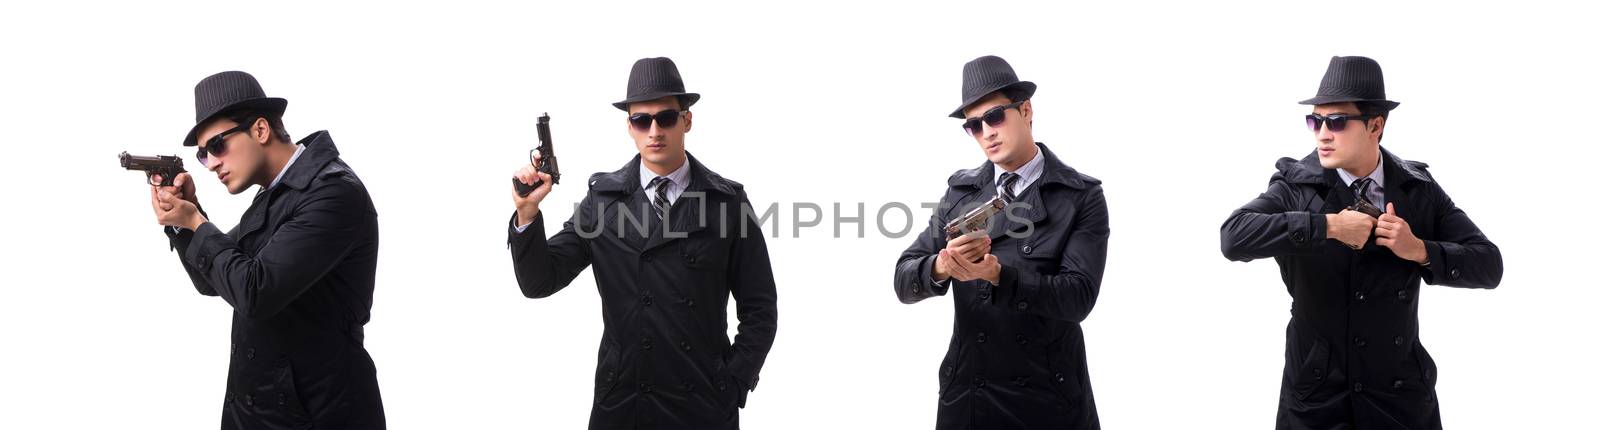 Man spy with handgun isolated on white background by Elnur